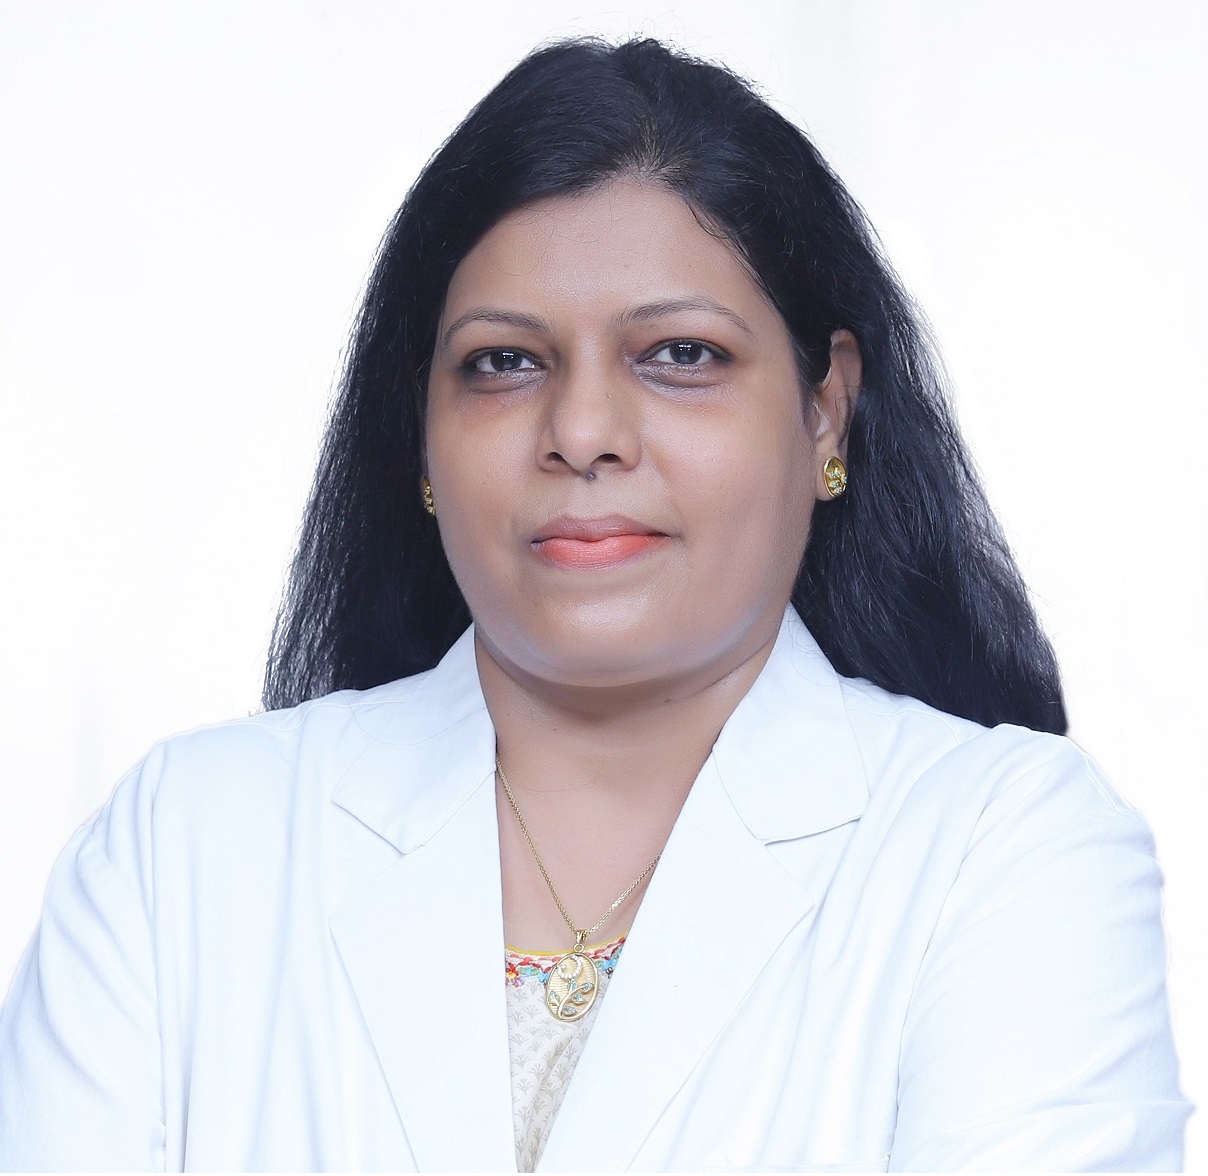 Bharti Priyanka博士